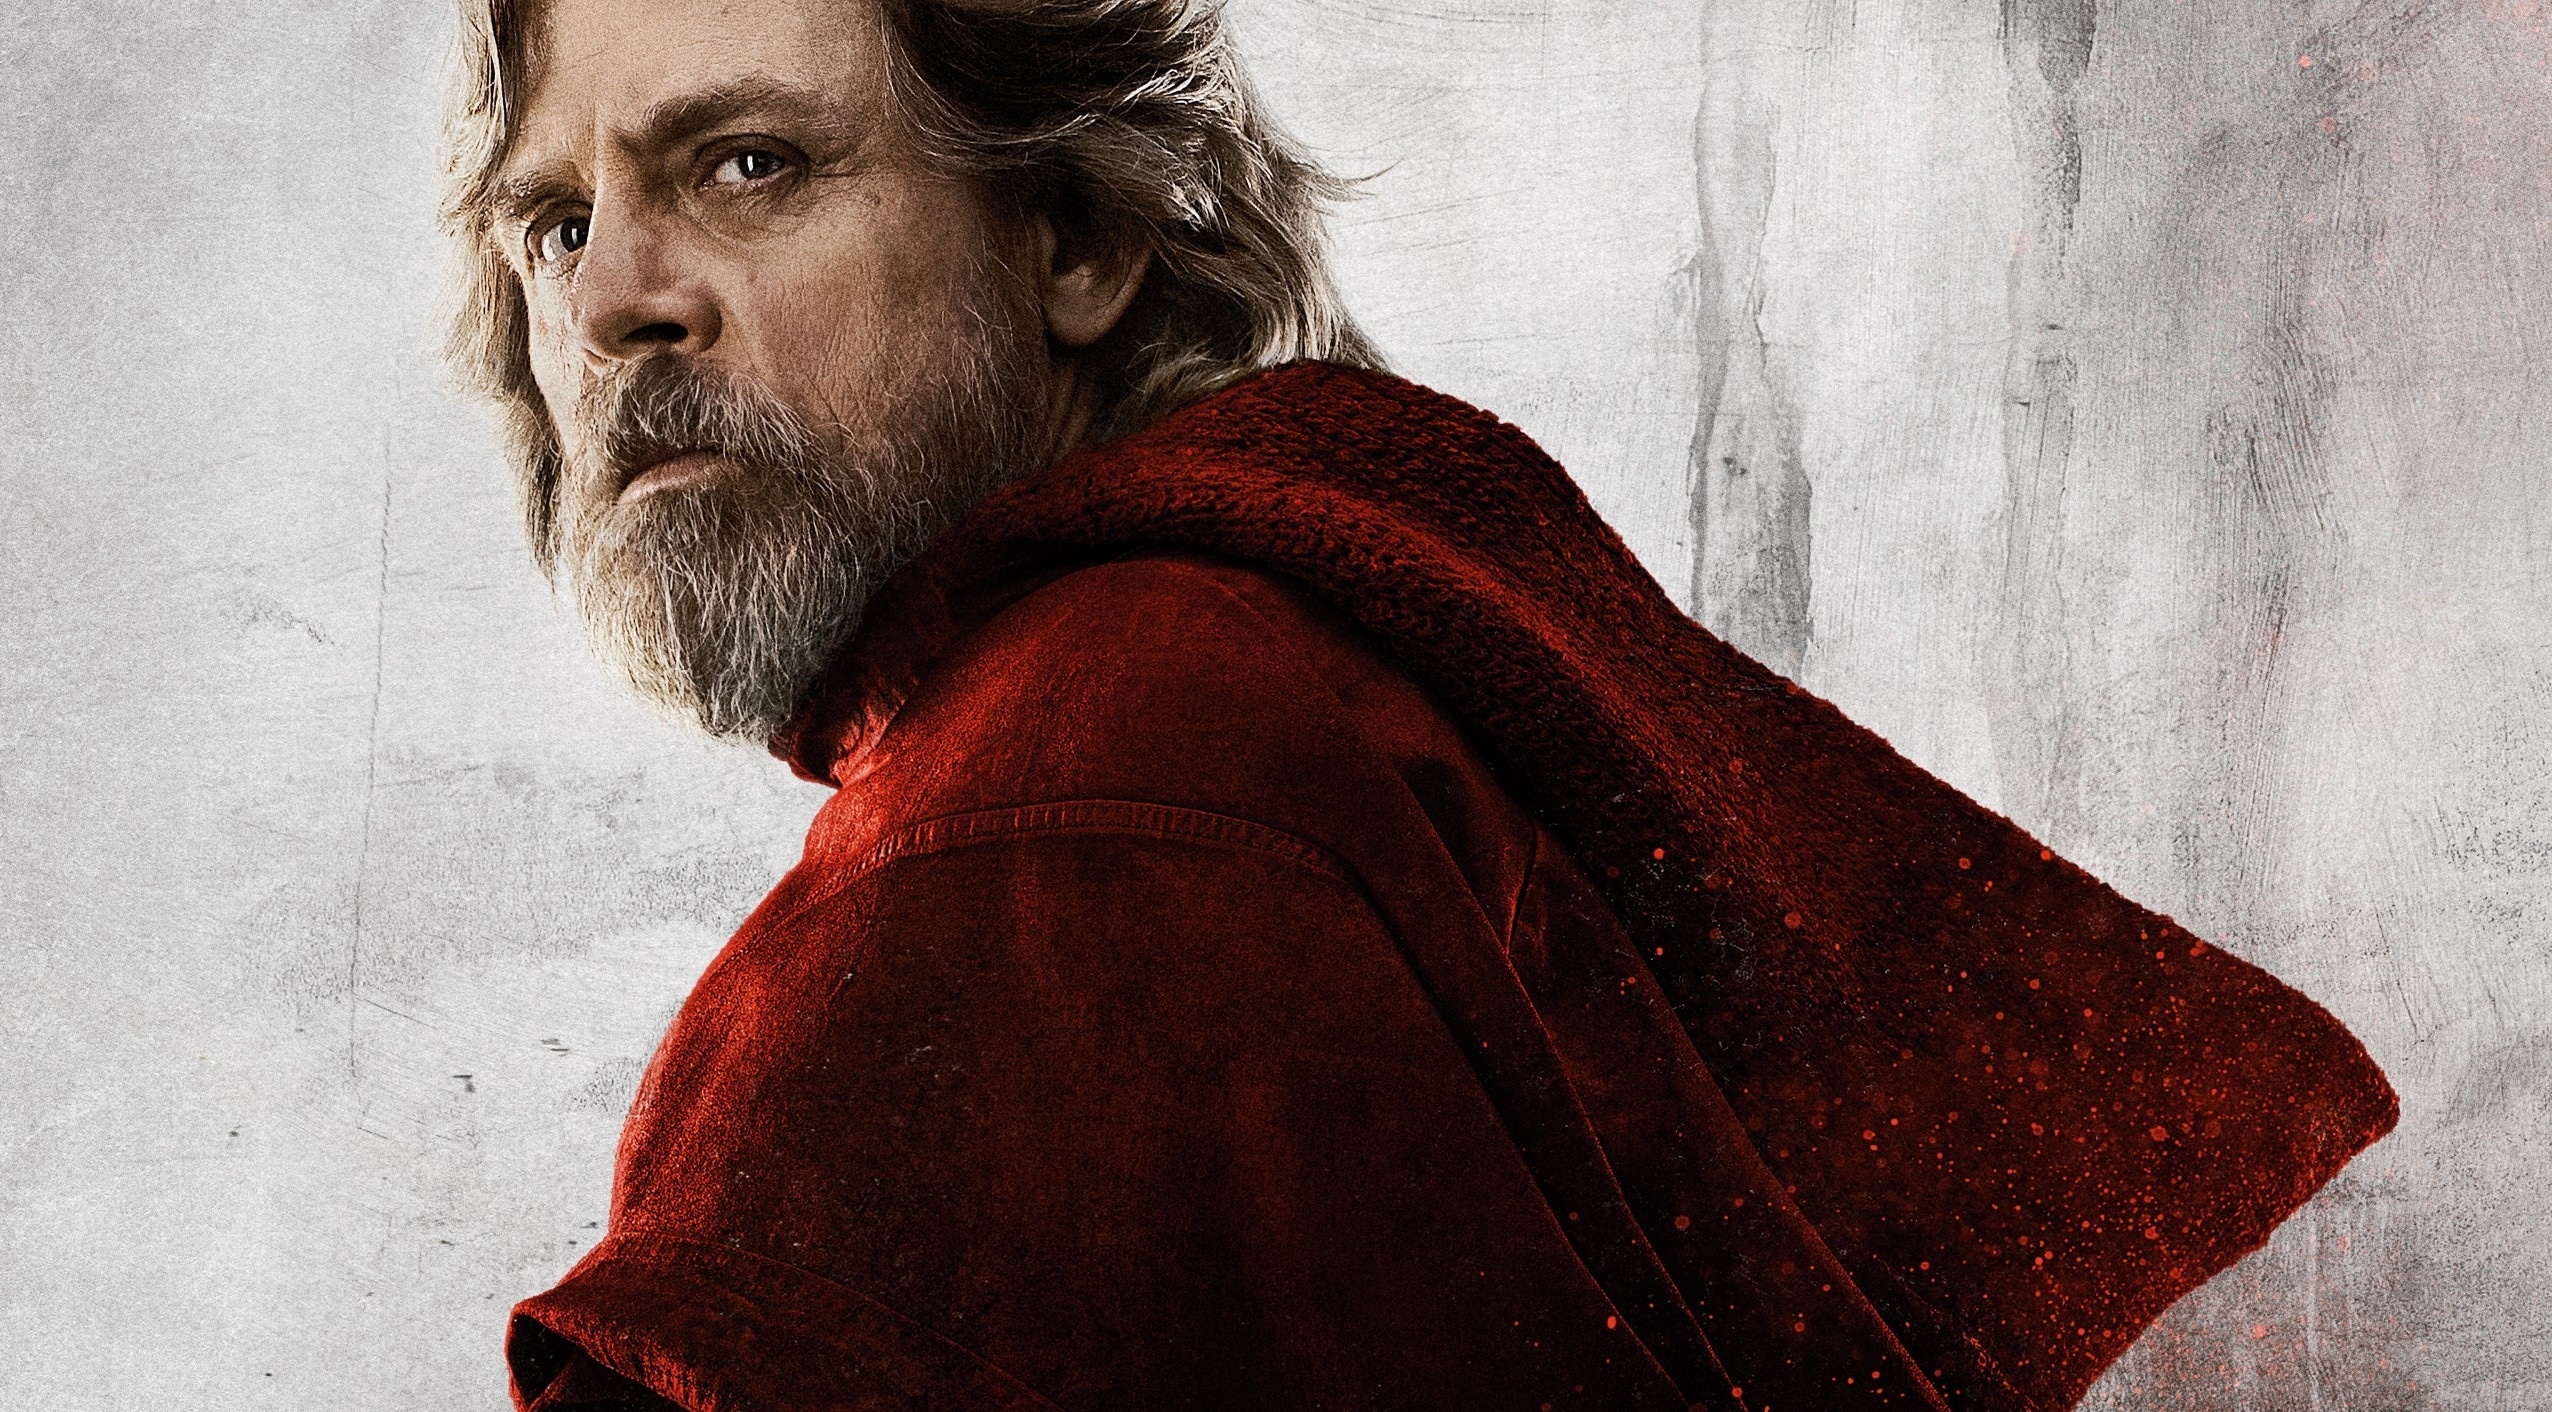 #Star Wars: Mark Hamill rechnet nicht mit einer Rückkehr als Luke Skywalker, schlägt Alternative vor